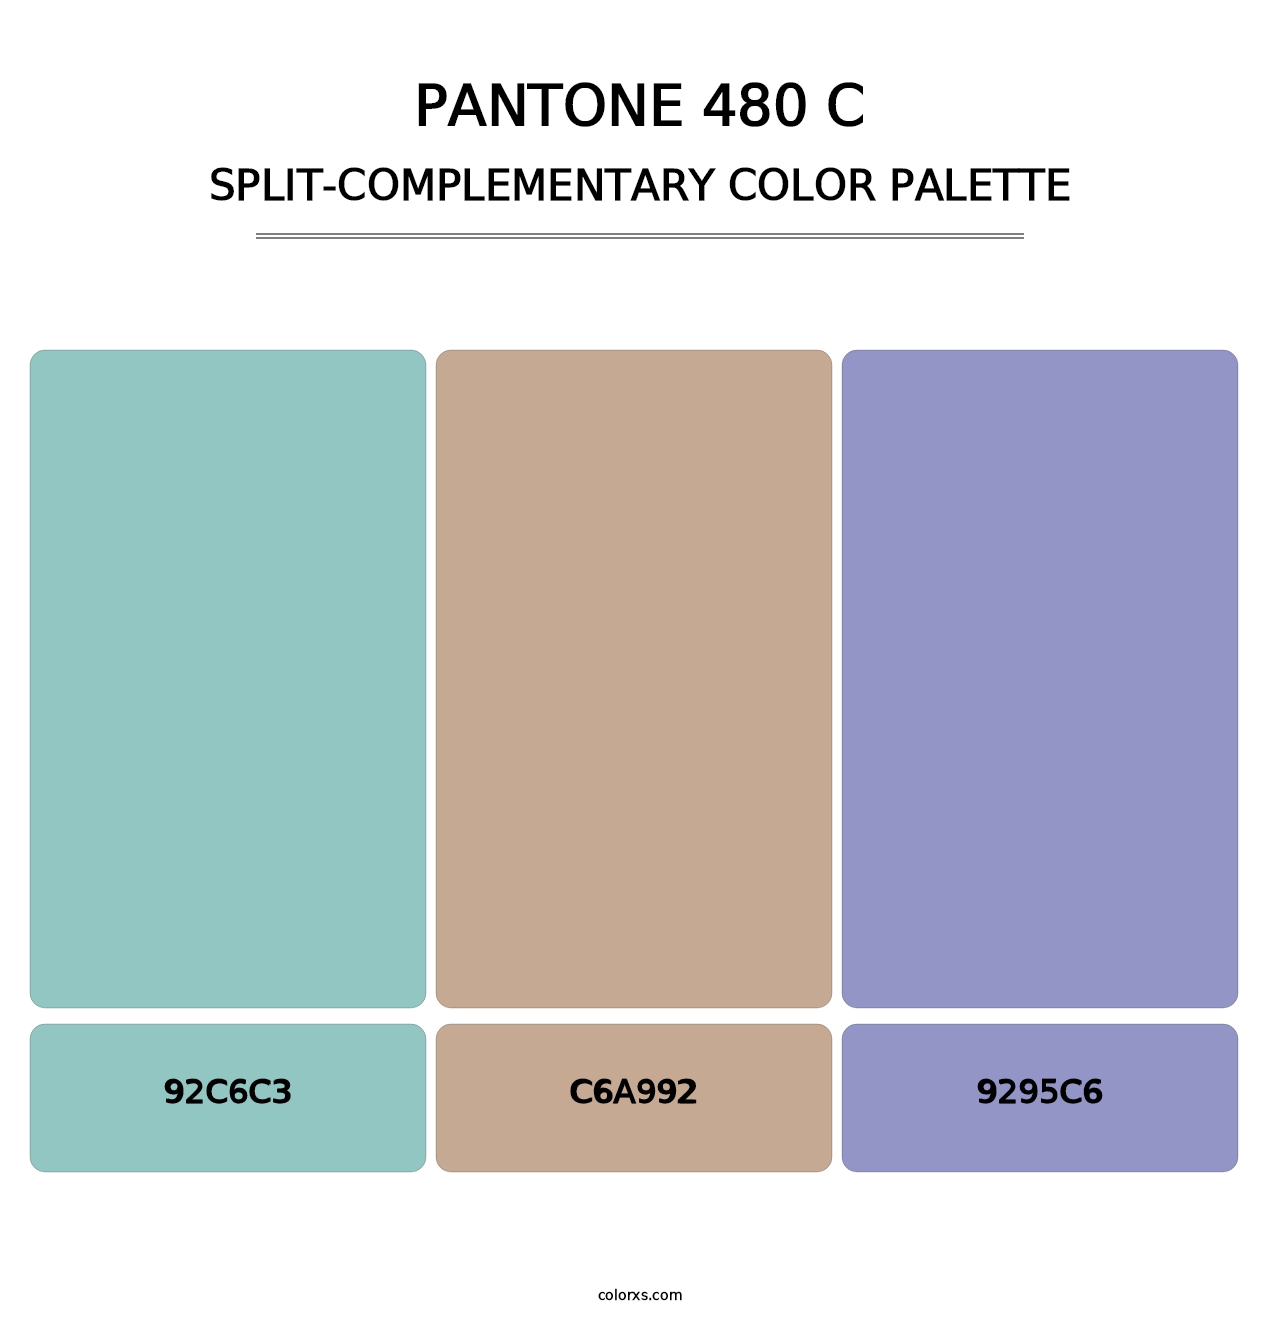 PANTONE 480 C - Split-Complementary Color Palette